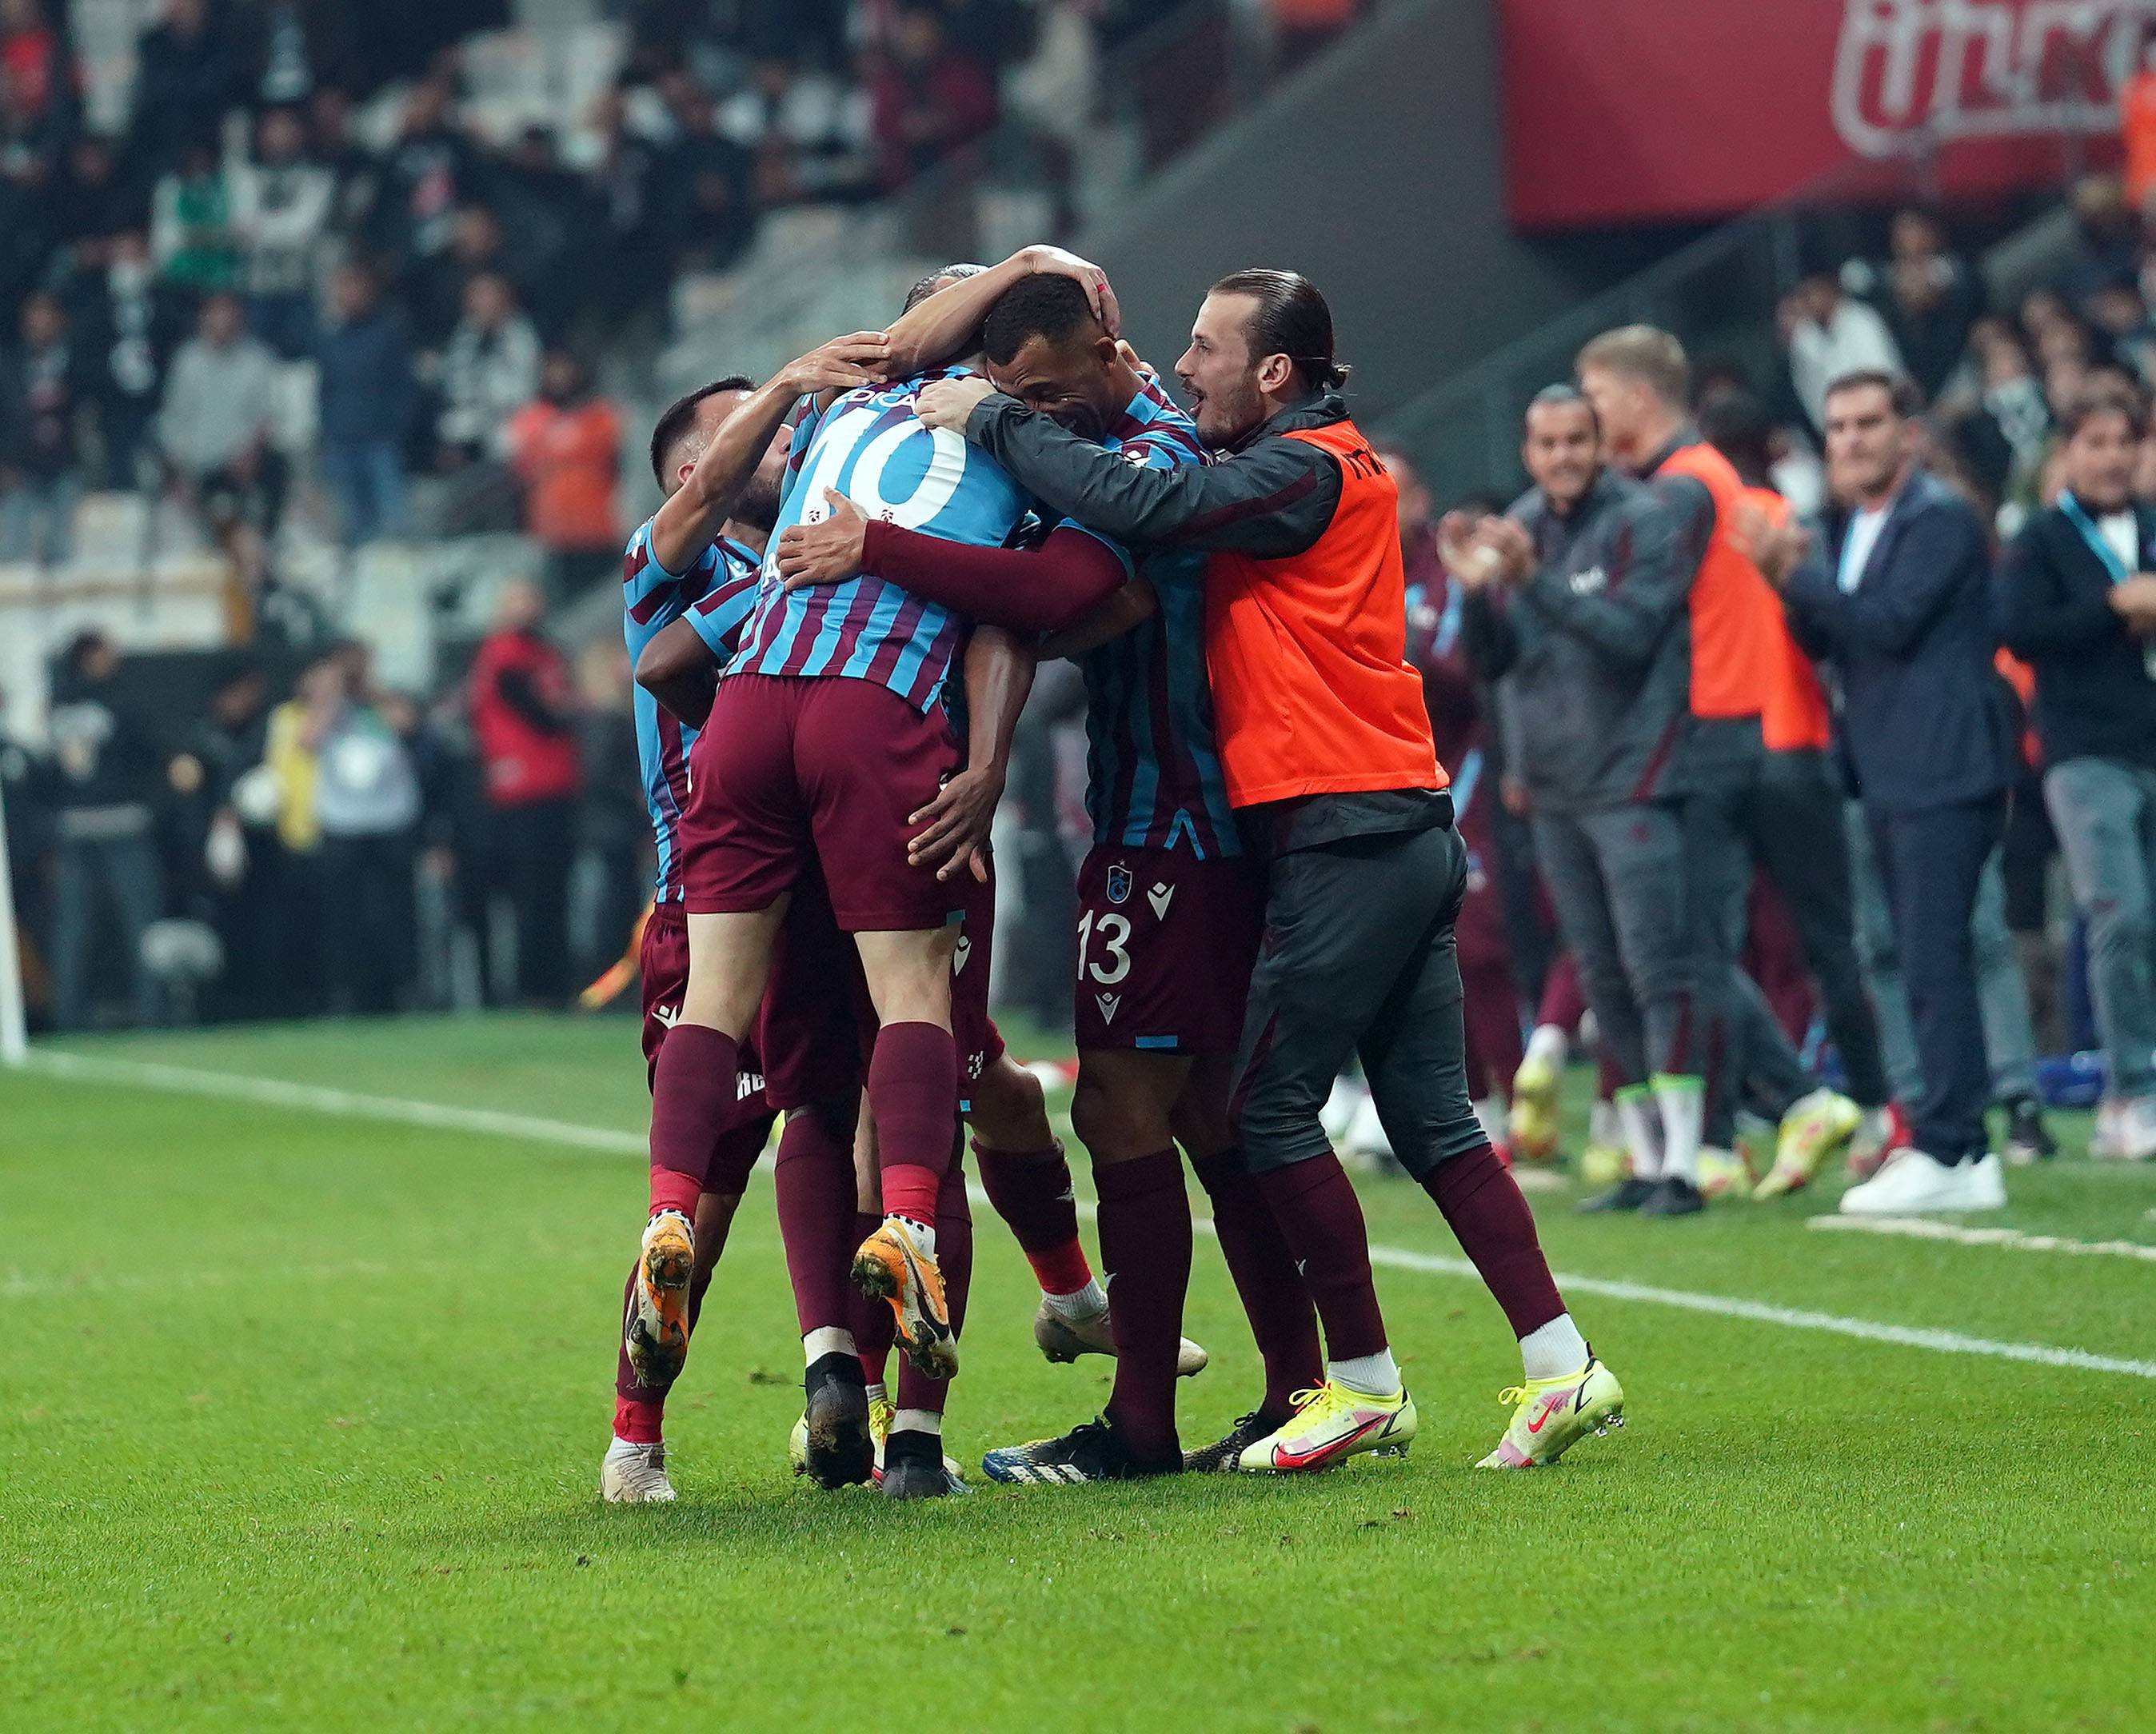 Hatayspor'un geçtiğimiz sezon transfer ettiği golcü futbolcu Mame Diouf, göstermiş olduğu performansla ön plana çıkıyor. Yıldız ismin transferinde ise Trabzonspor devrede.
asistanaliz.com'un haberi